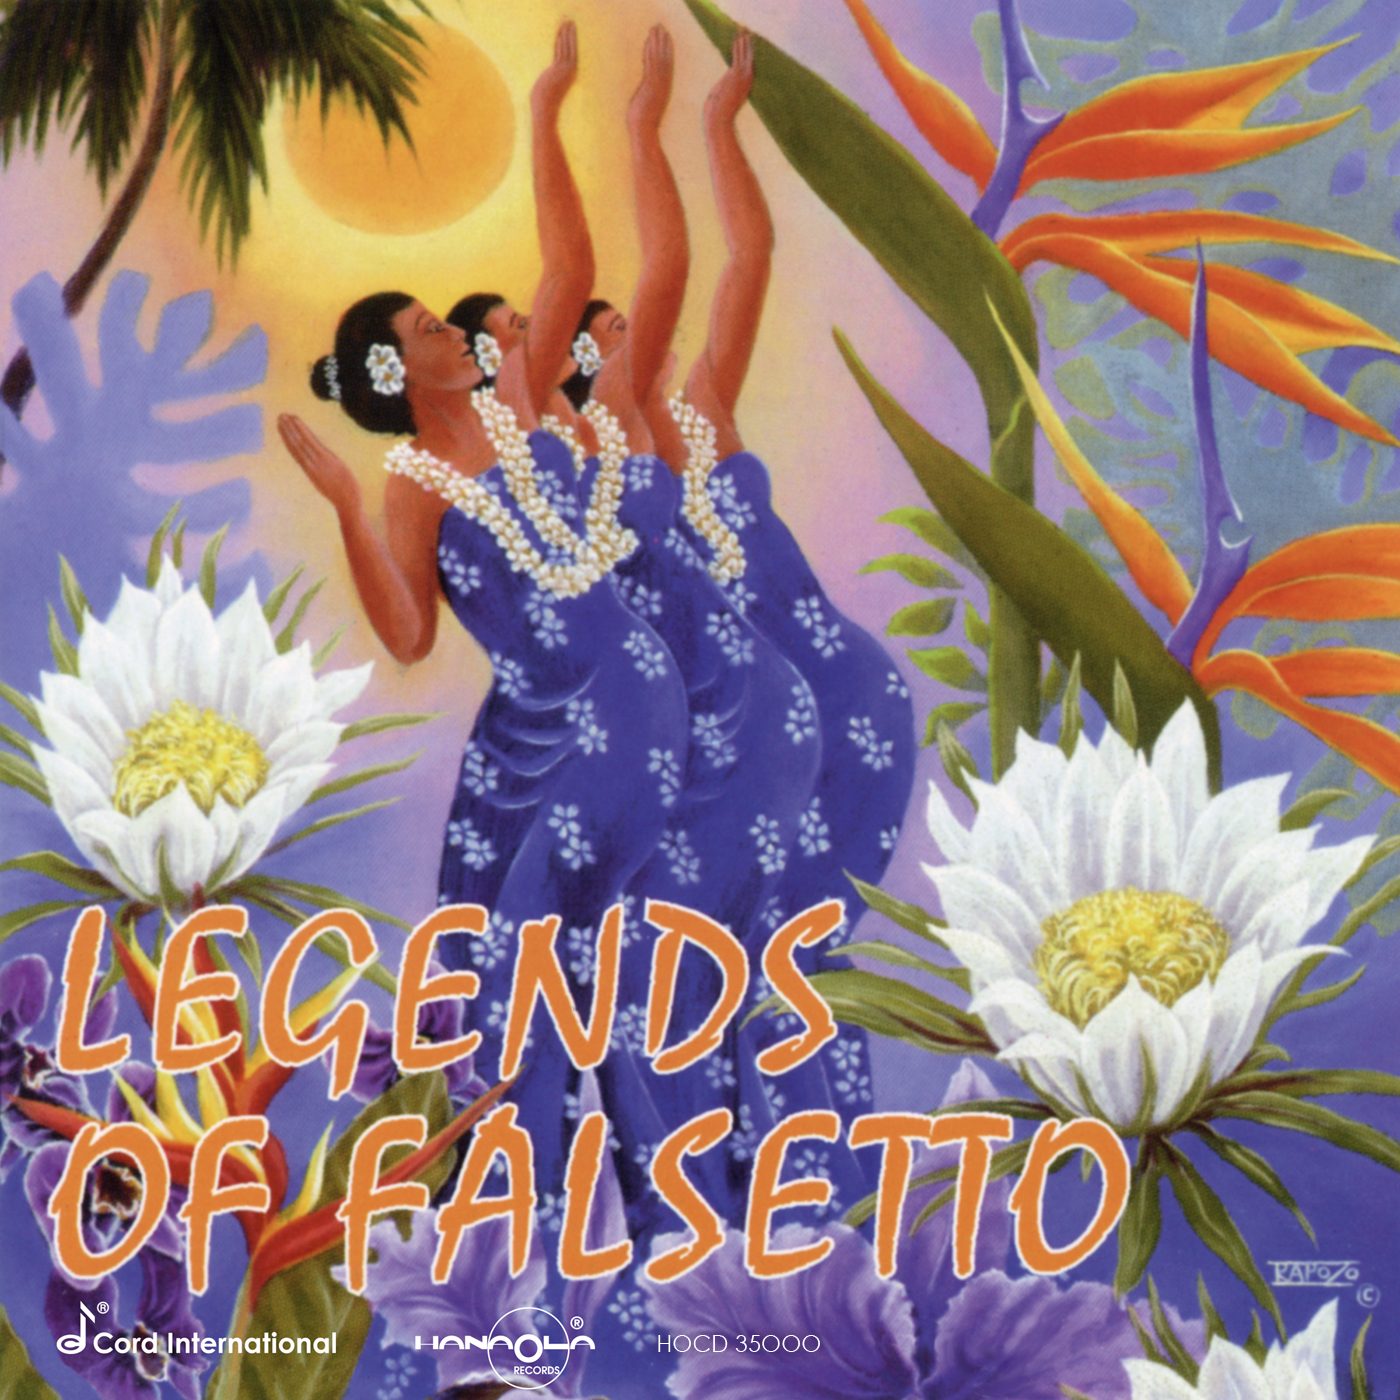 Legends of Falsetto